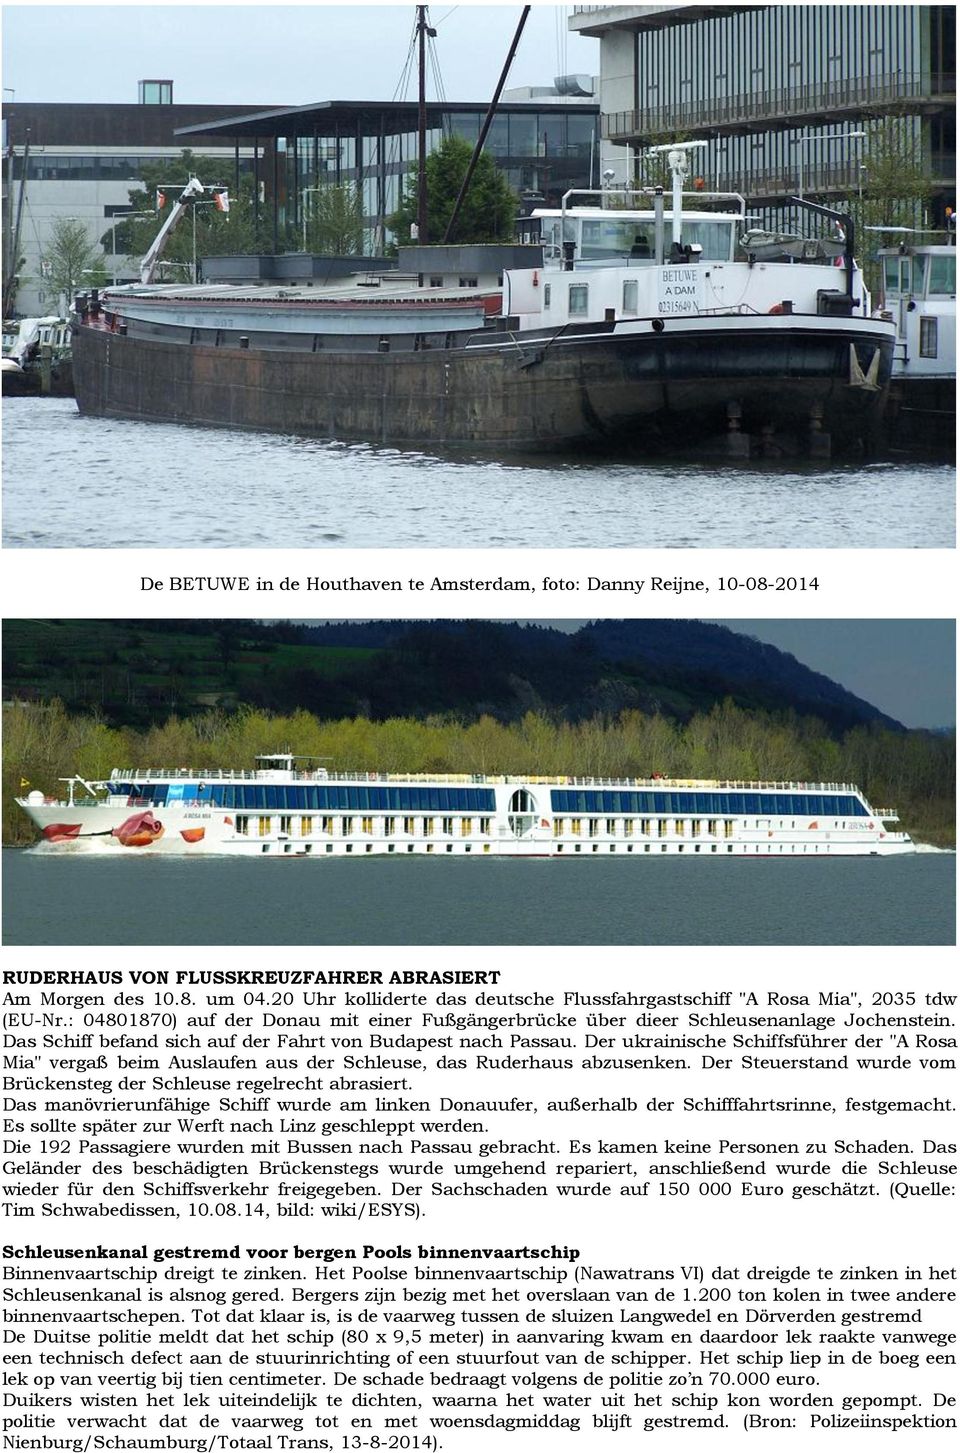 Das Schiff befand sich auf der Fahrt von Budapest nach Passau. Der ukrainische Schiffsführer der "A Rosa Mia" vergaß beim Auslaufen aus der Schleuse, das Ruderhaus abzusenken.